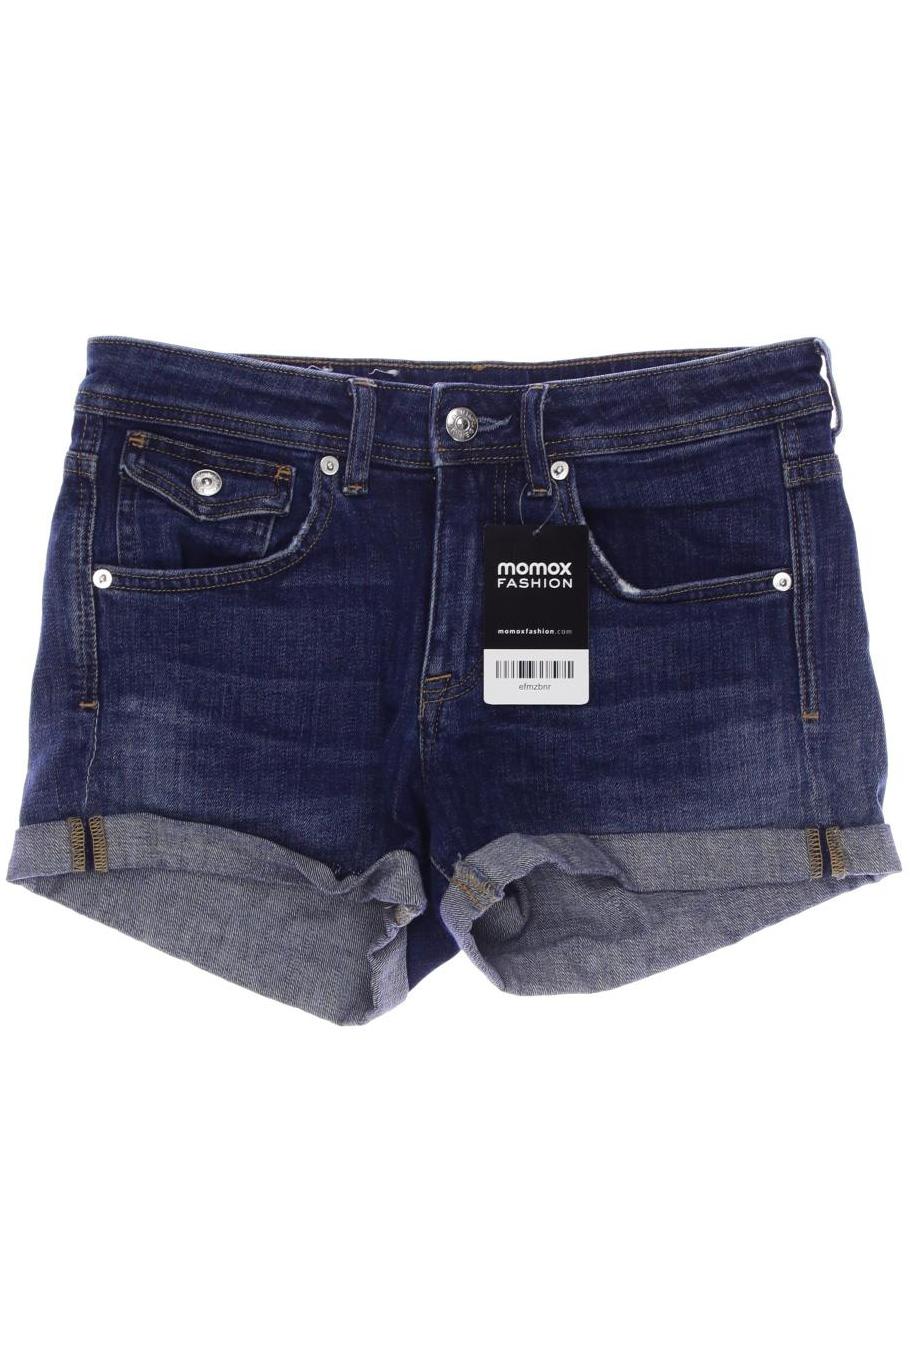 H&M Damen Shorts, marineblau, Gr. 36 von H&M